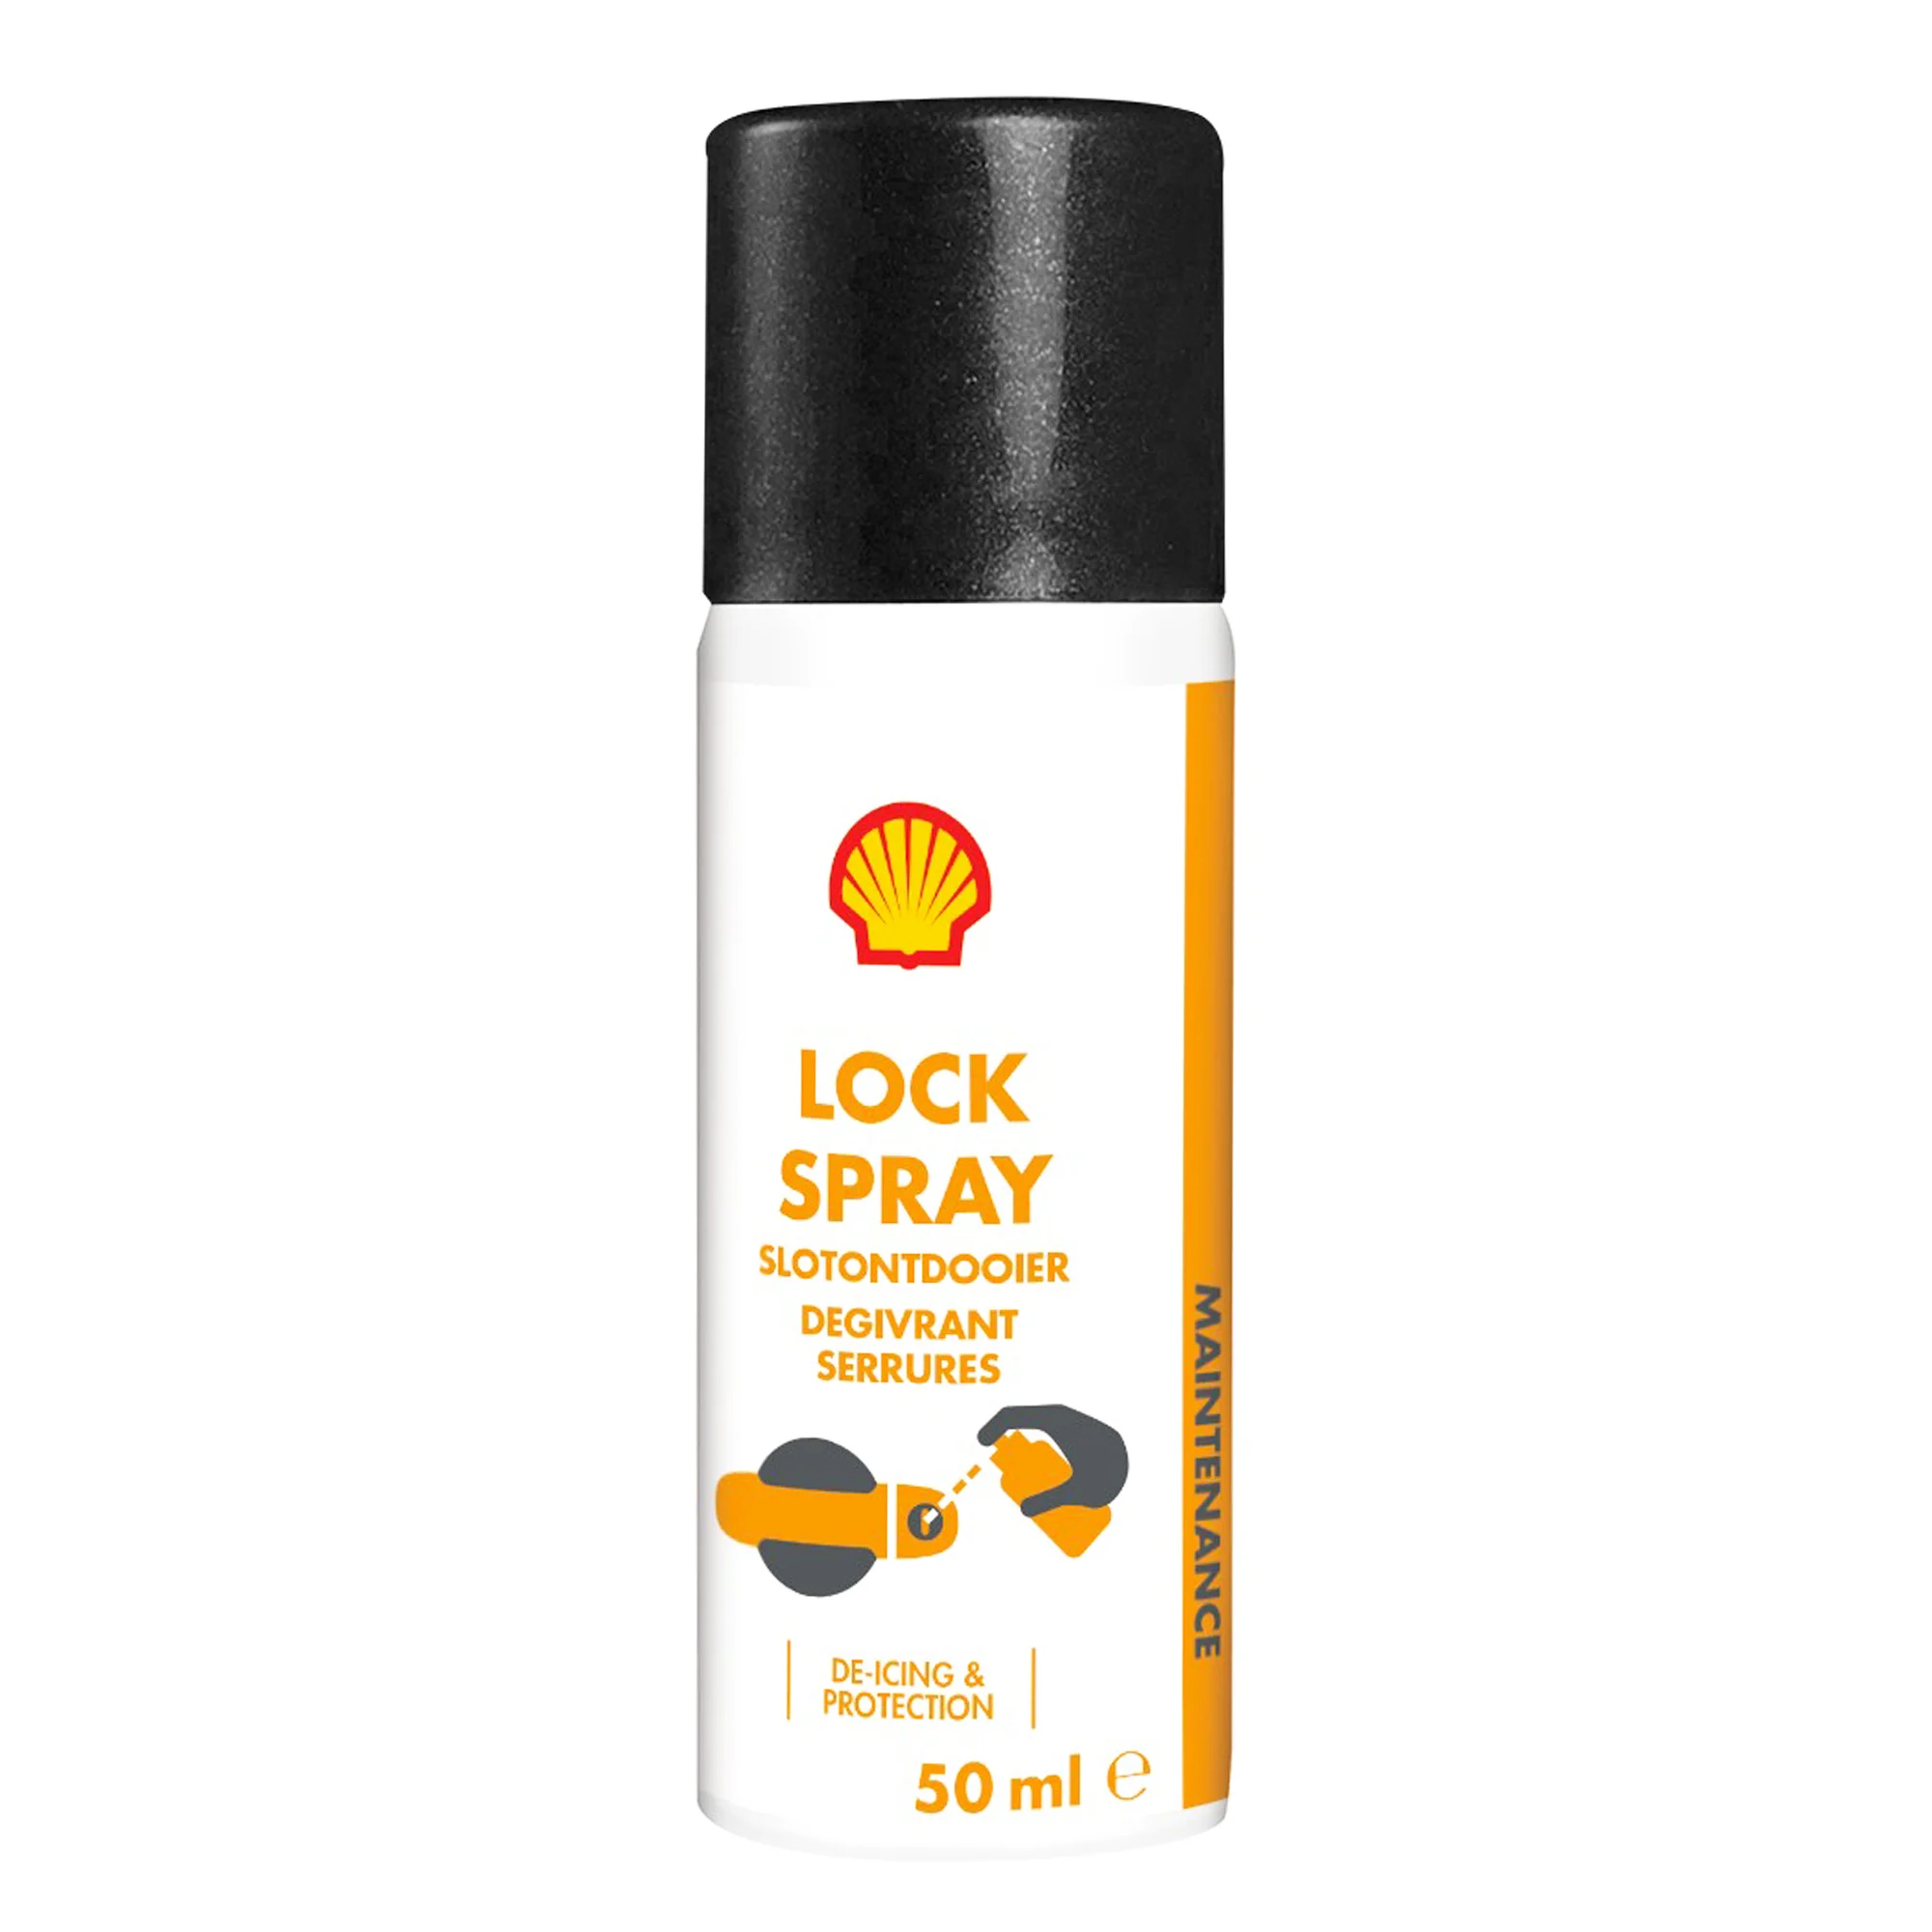 Размораживатель для замков Shell Lock spray 50 мл (ТОВ-У507650)